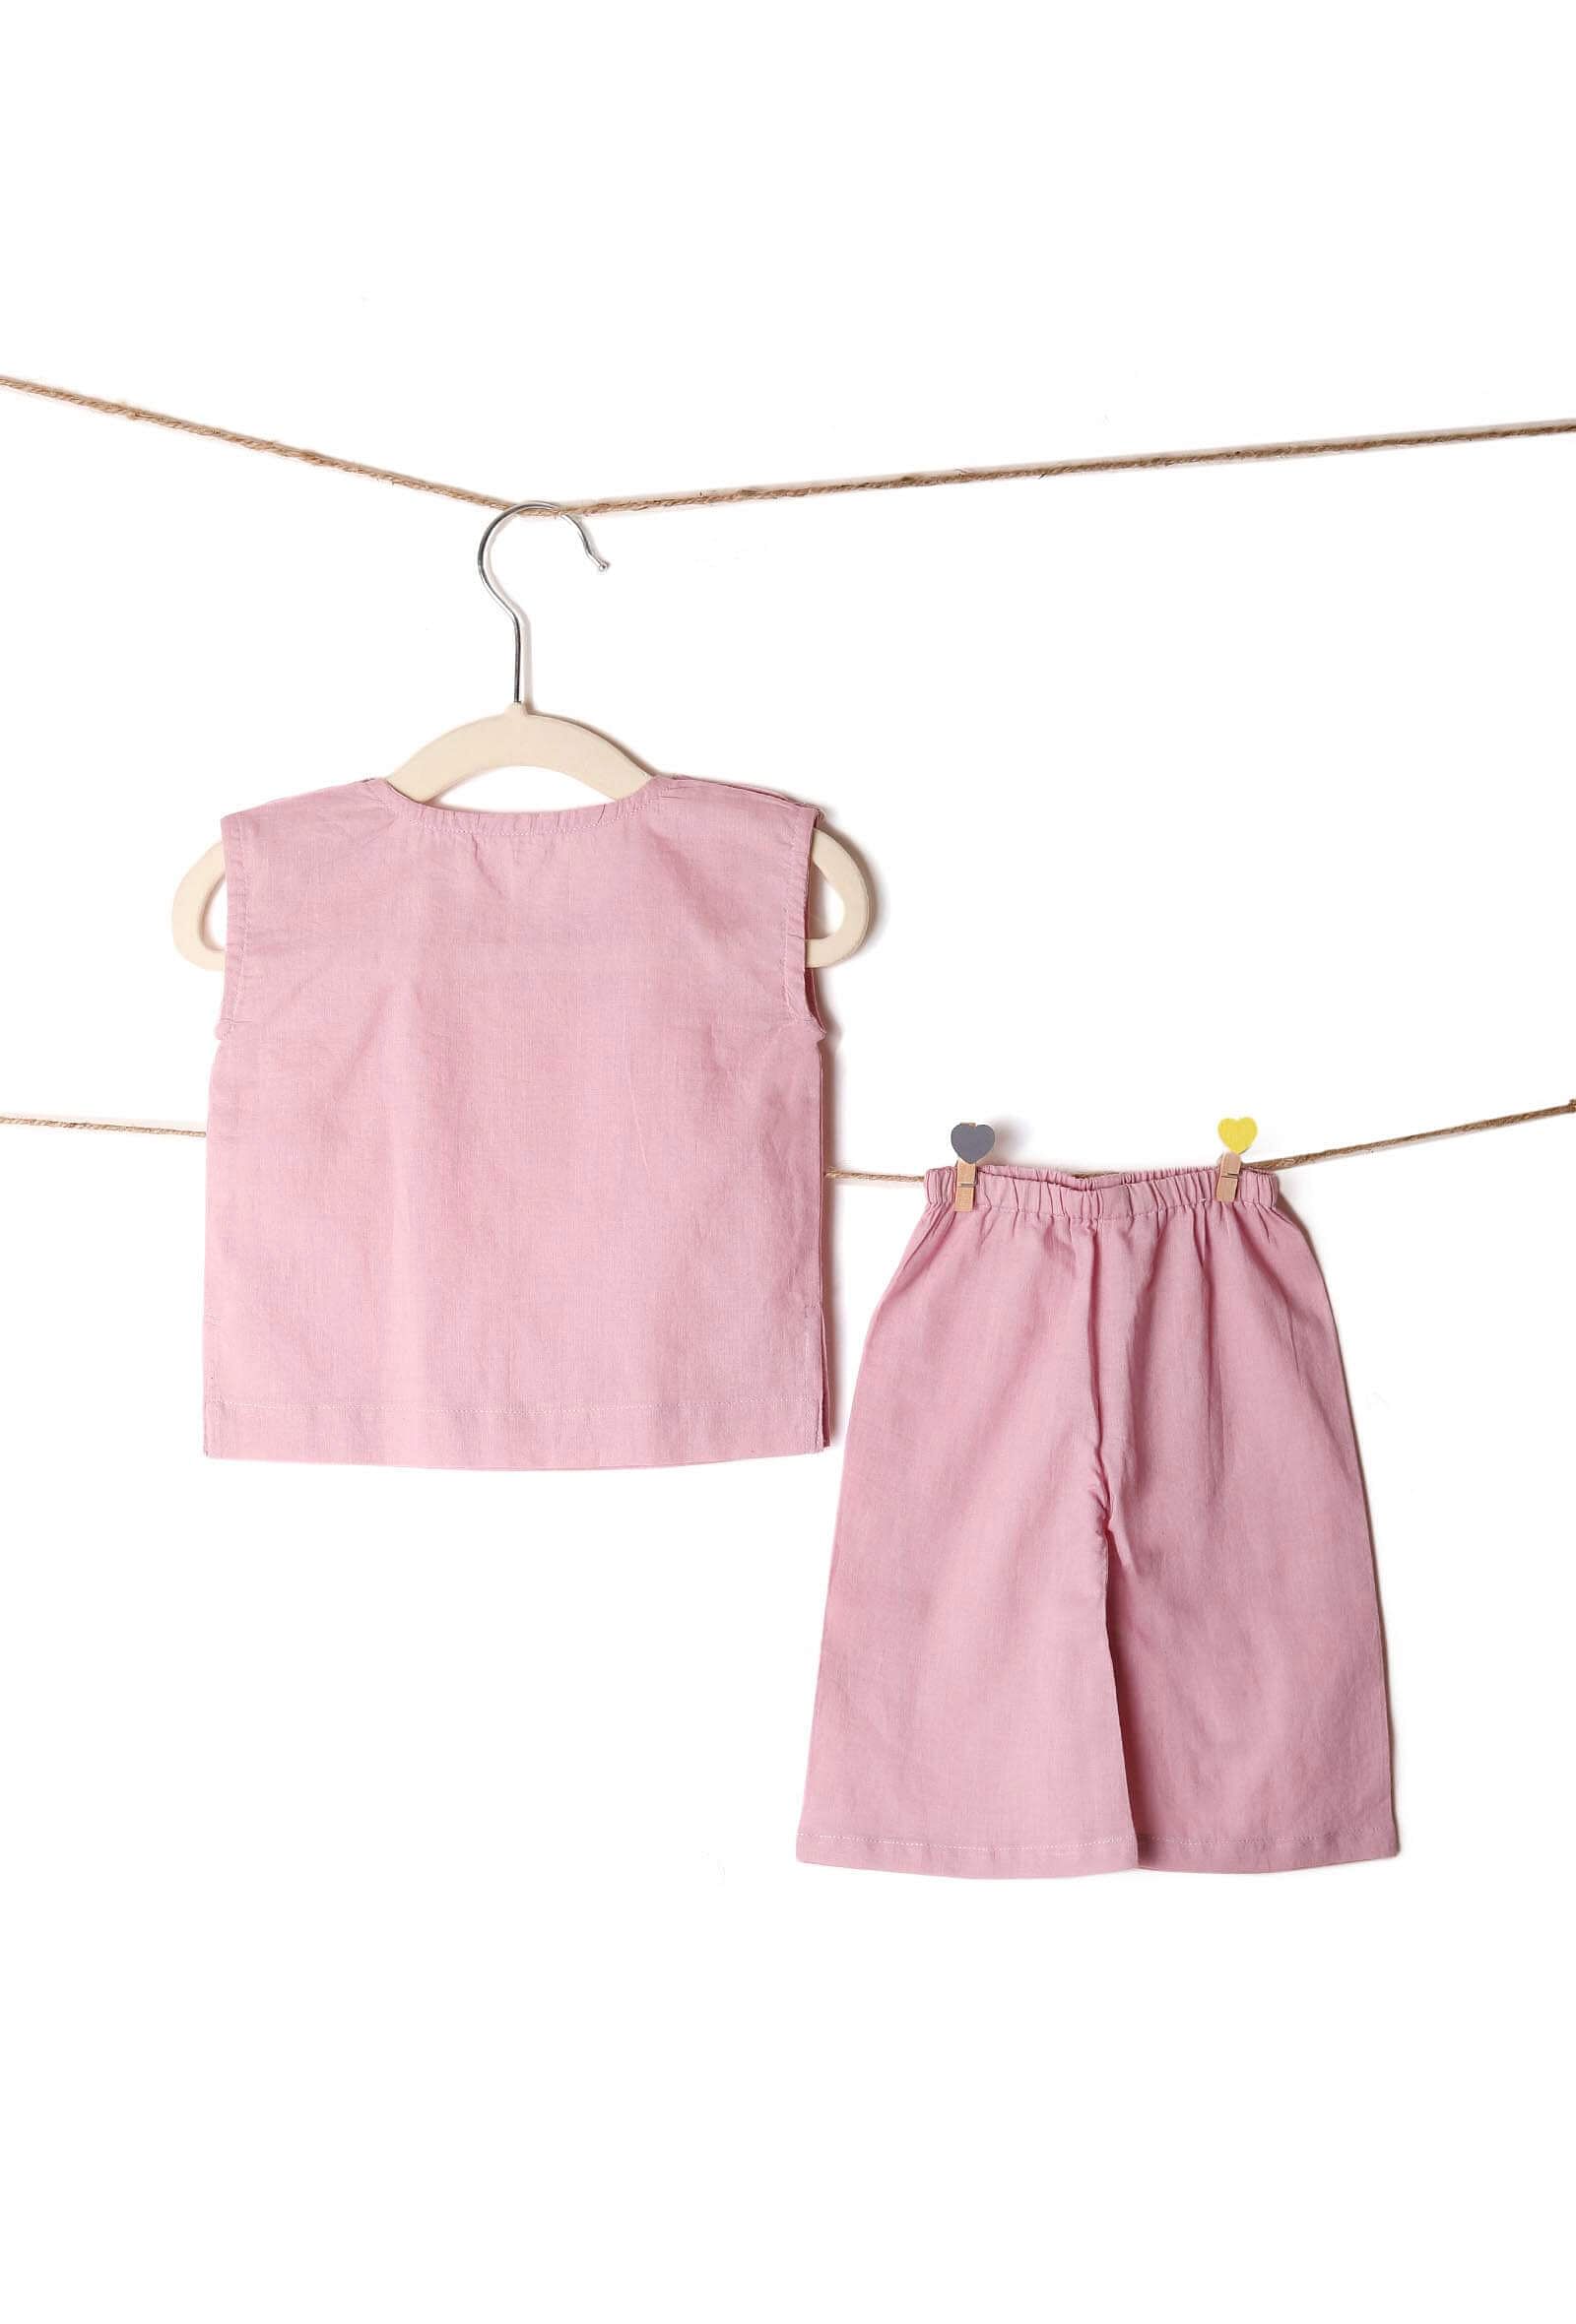 Set of 2: Lavender Bamboo Shirt & Shorts